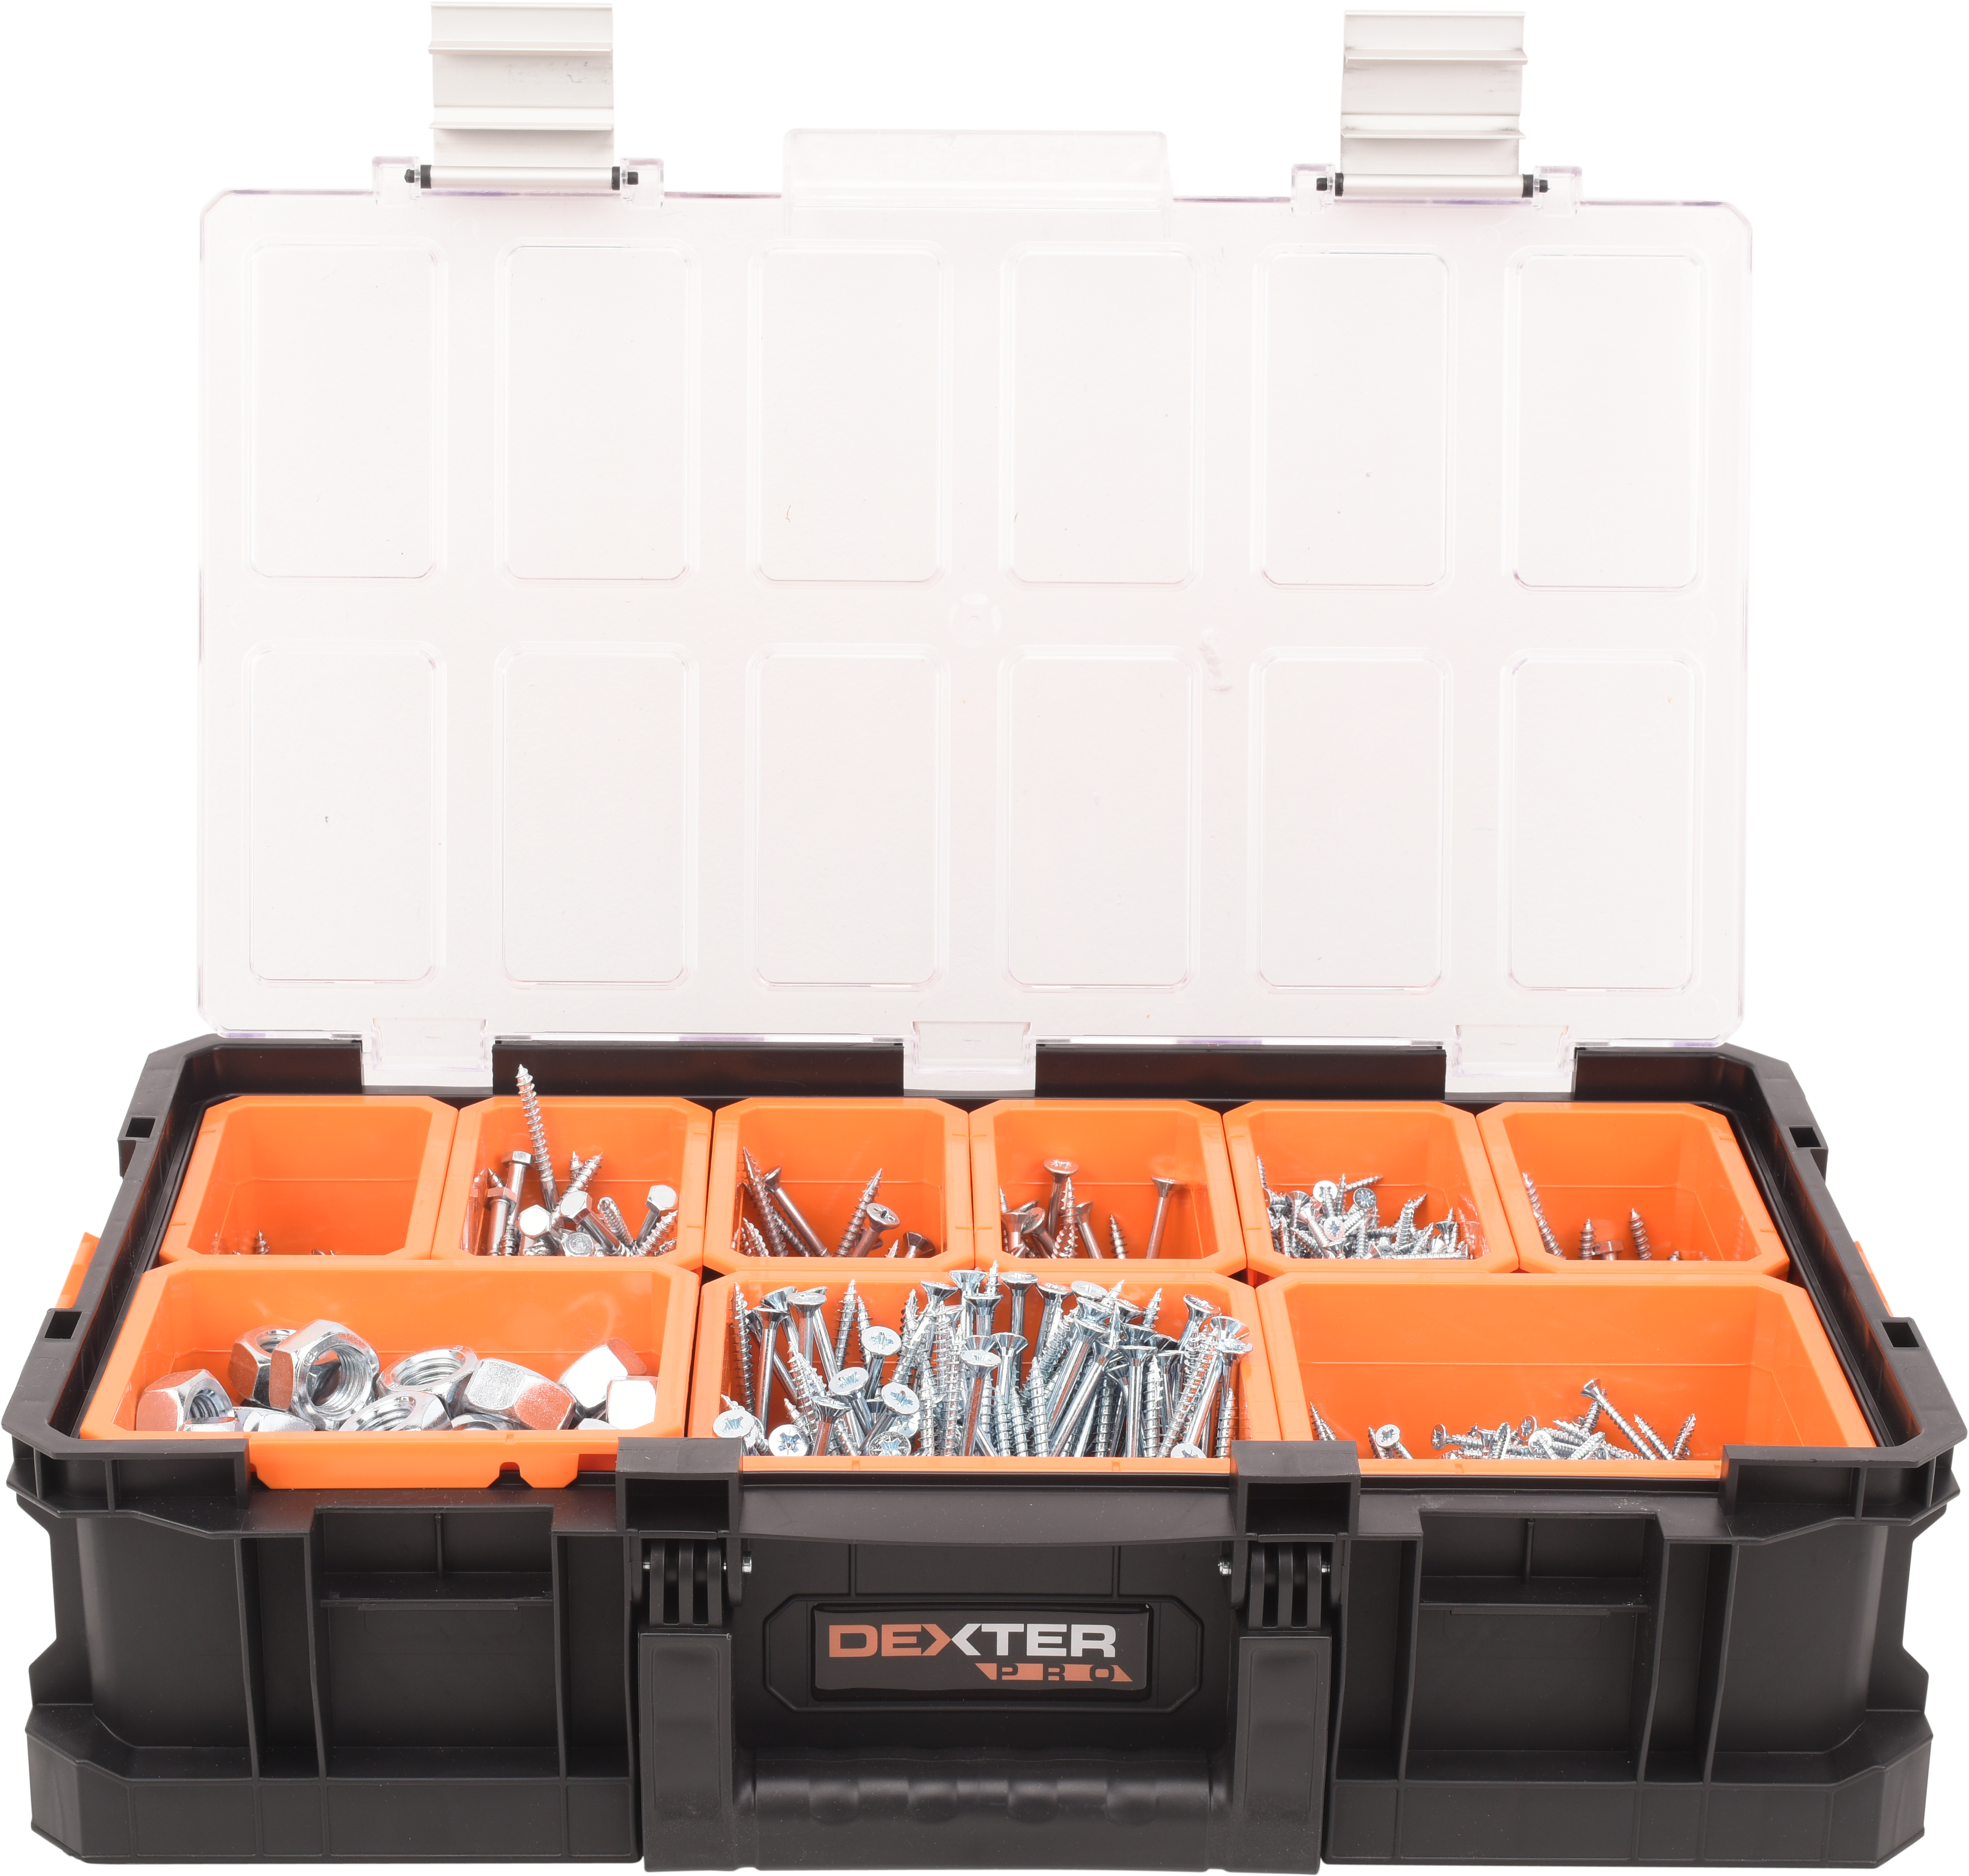 Caja de herramientas dexter pro con capacidad de 14.3 litros